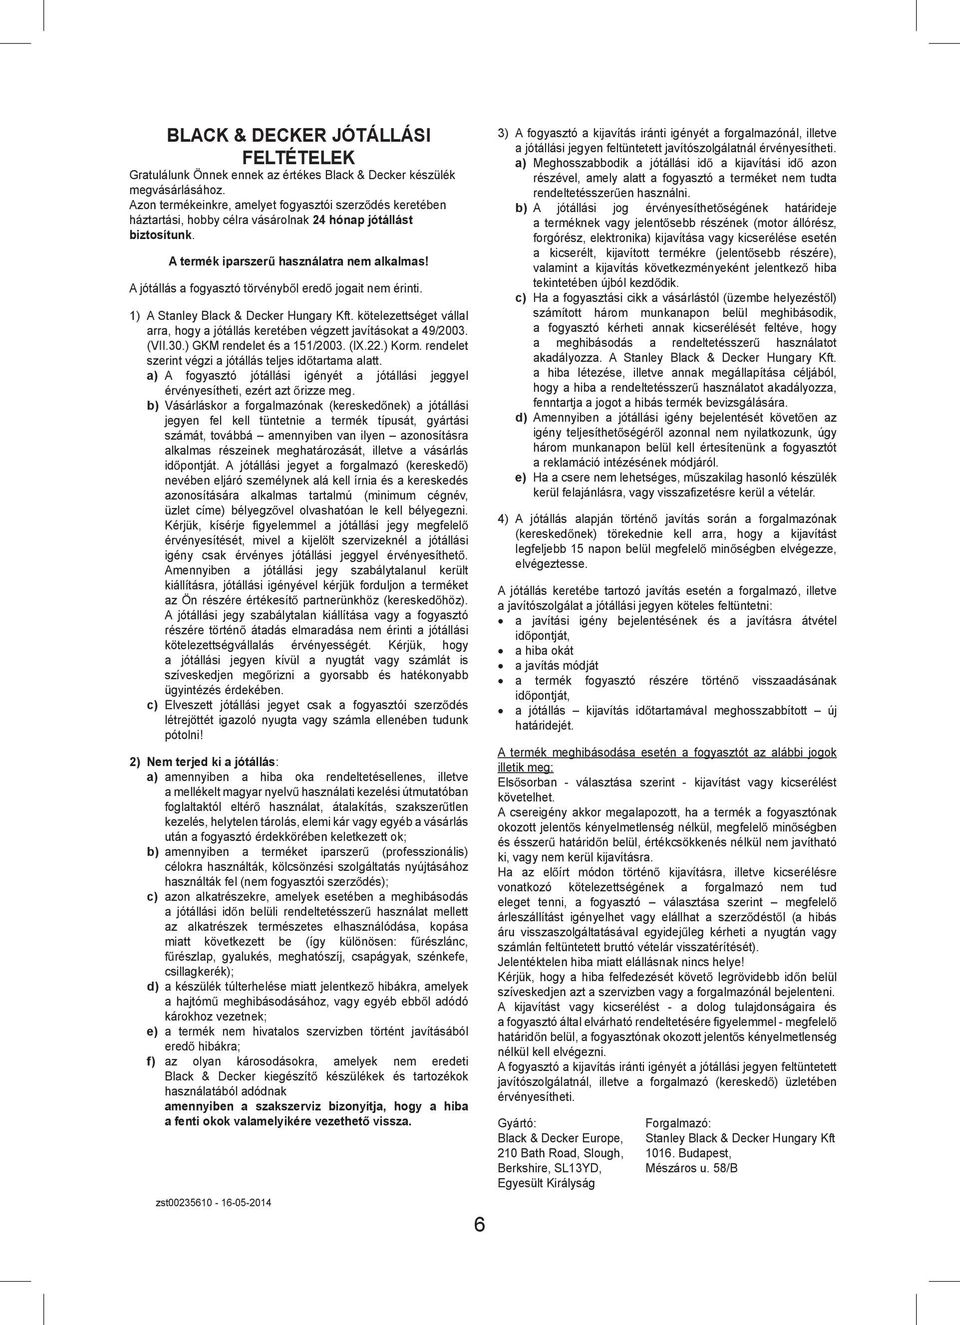 A jótállás a fogyasztó törvényb l ered jogait nem érinti. 1) A Stanley Black & Decker Hungary Kft. kötelezettséget vállal arra, hogy a jótállás keretében végzett javításokat a 49/2003. (VII.30.